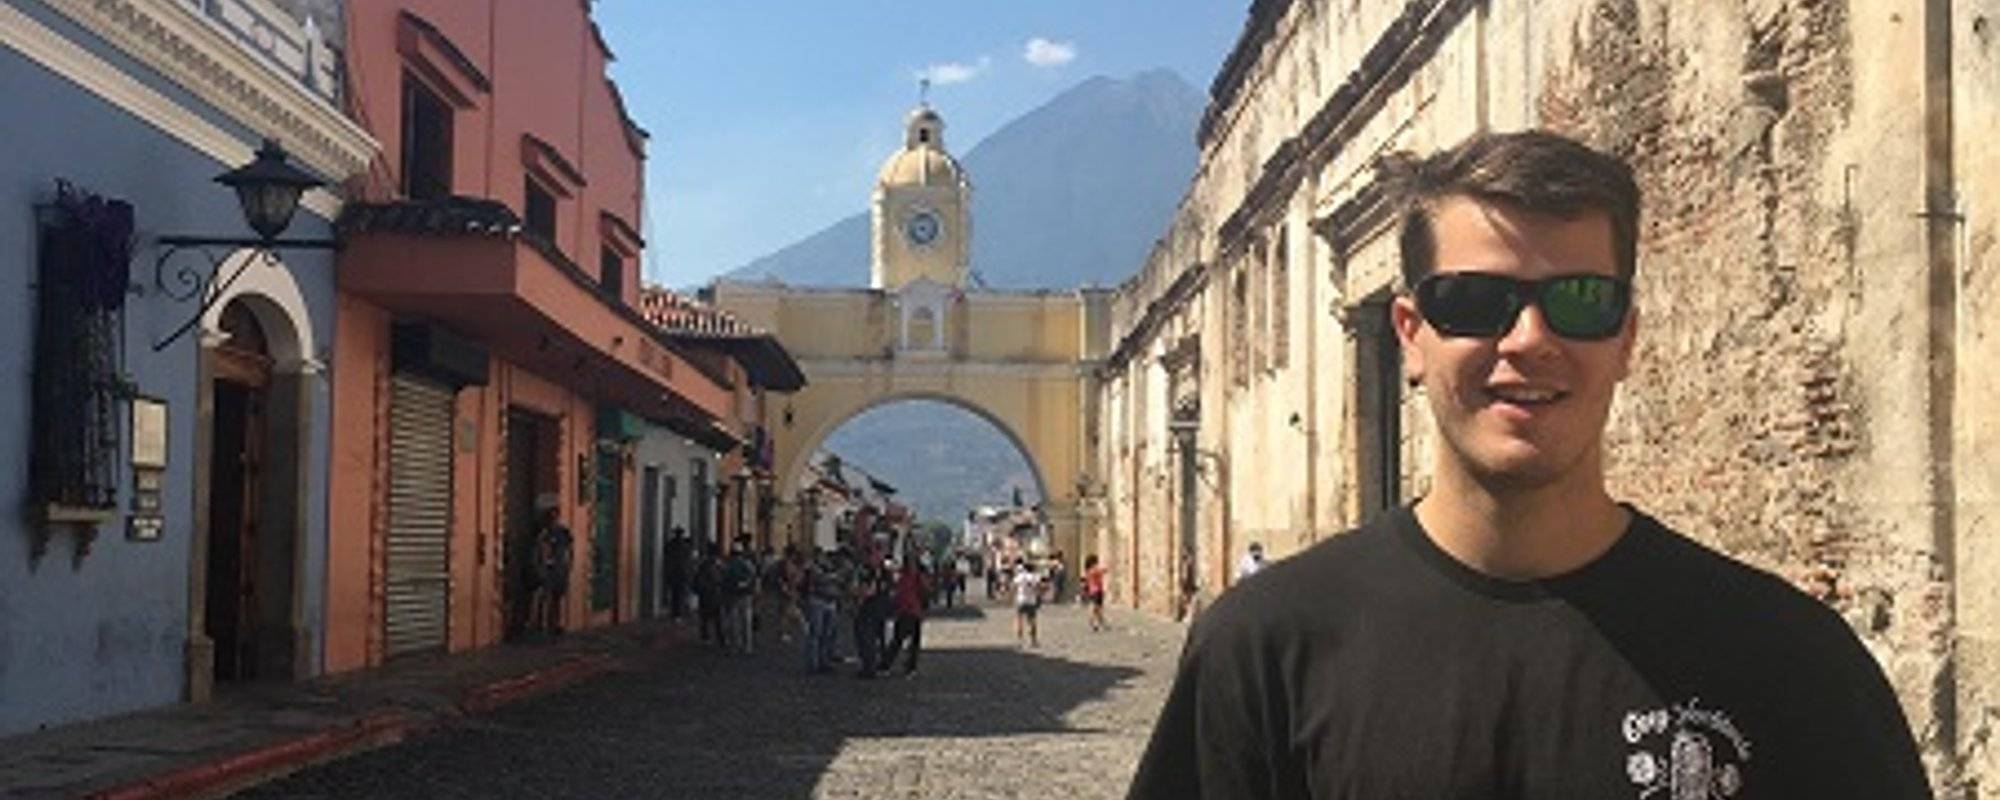 Gringos In Paradise: Antigua, Guatemala